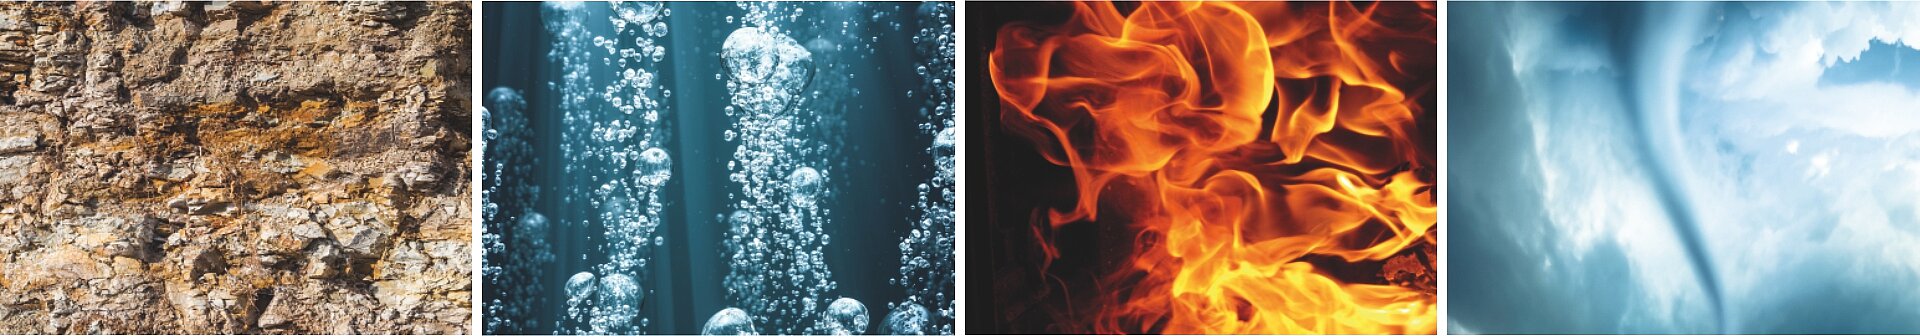 Erde, Wasser, Feuer, Luft die vier Elemente formen den Baustoff Ziegel.